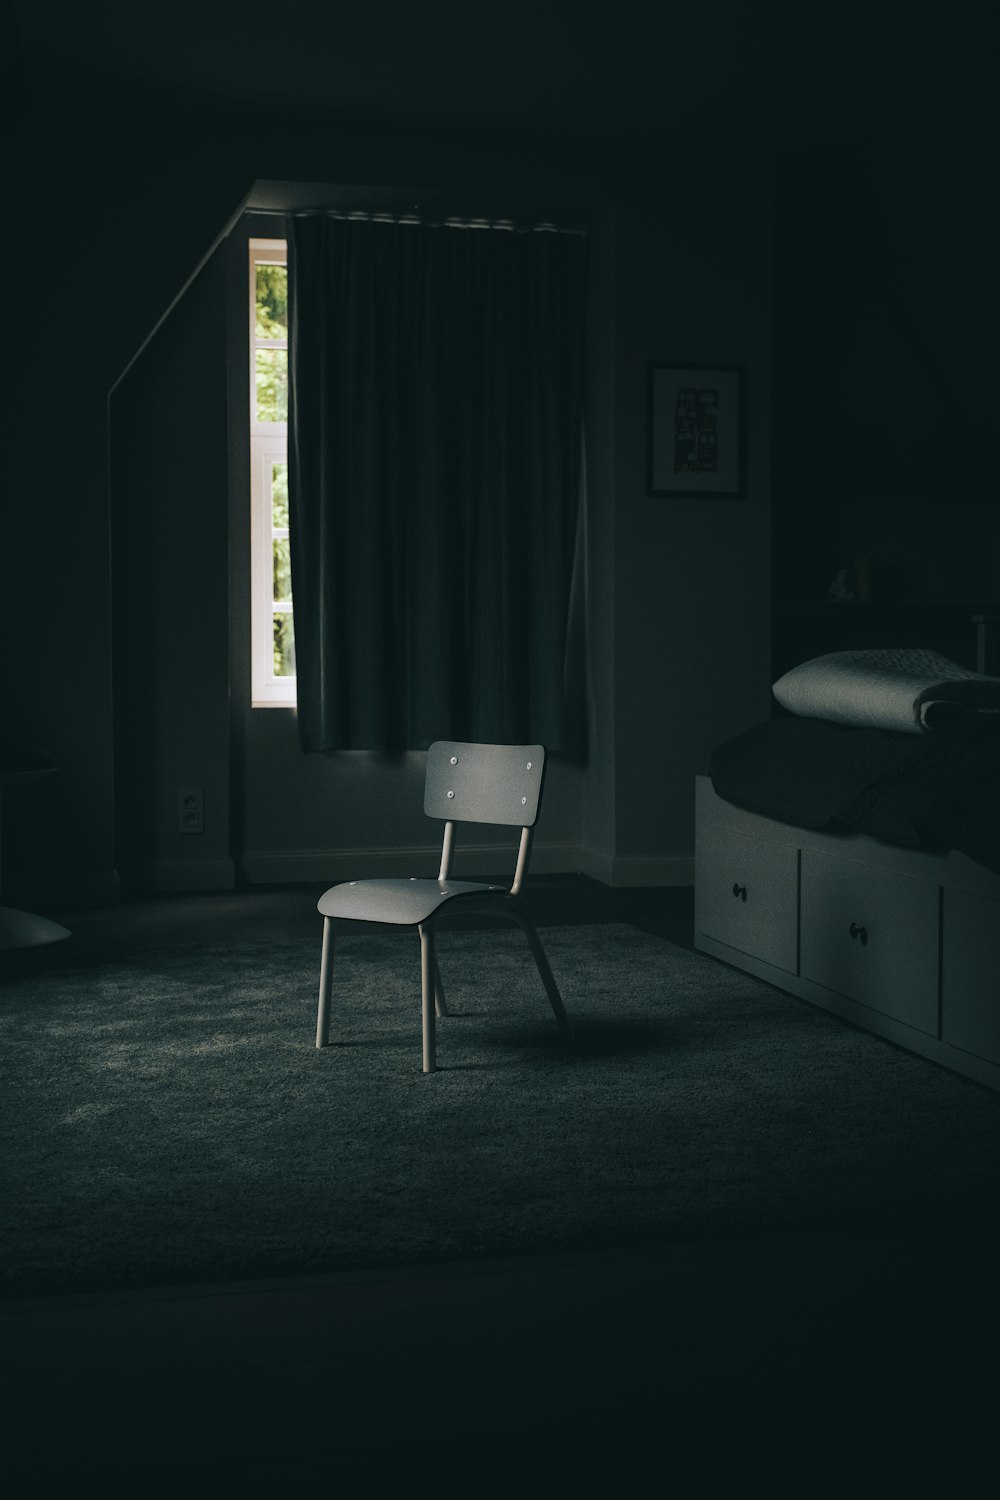 Marco de cama de madera blanca junto a la cortina negra de la ventana